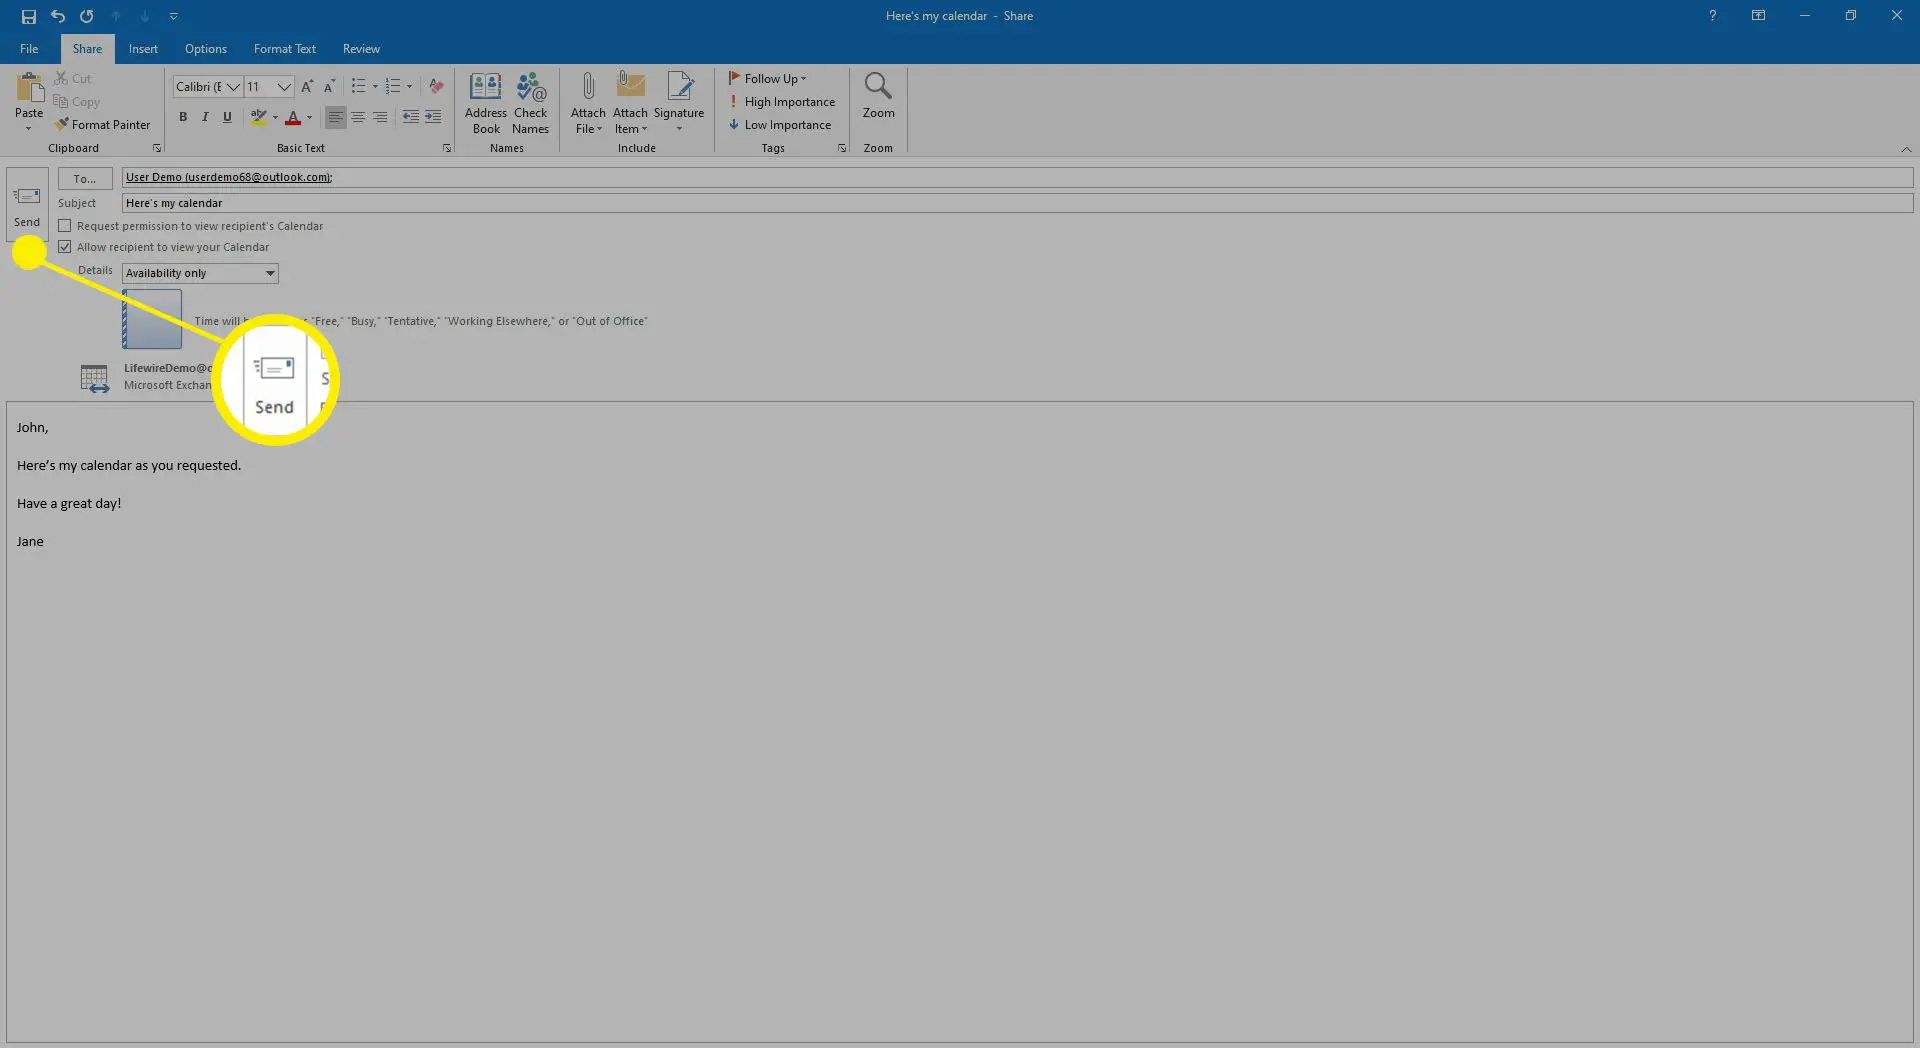 Inserindo uma mensagem para acompanhar o convite de compartilhamento de calendário no Outlook.